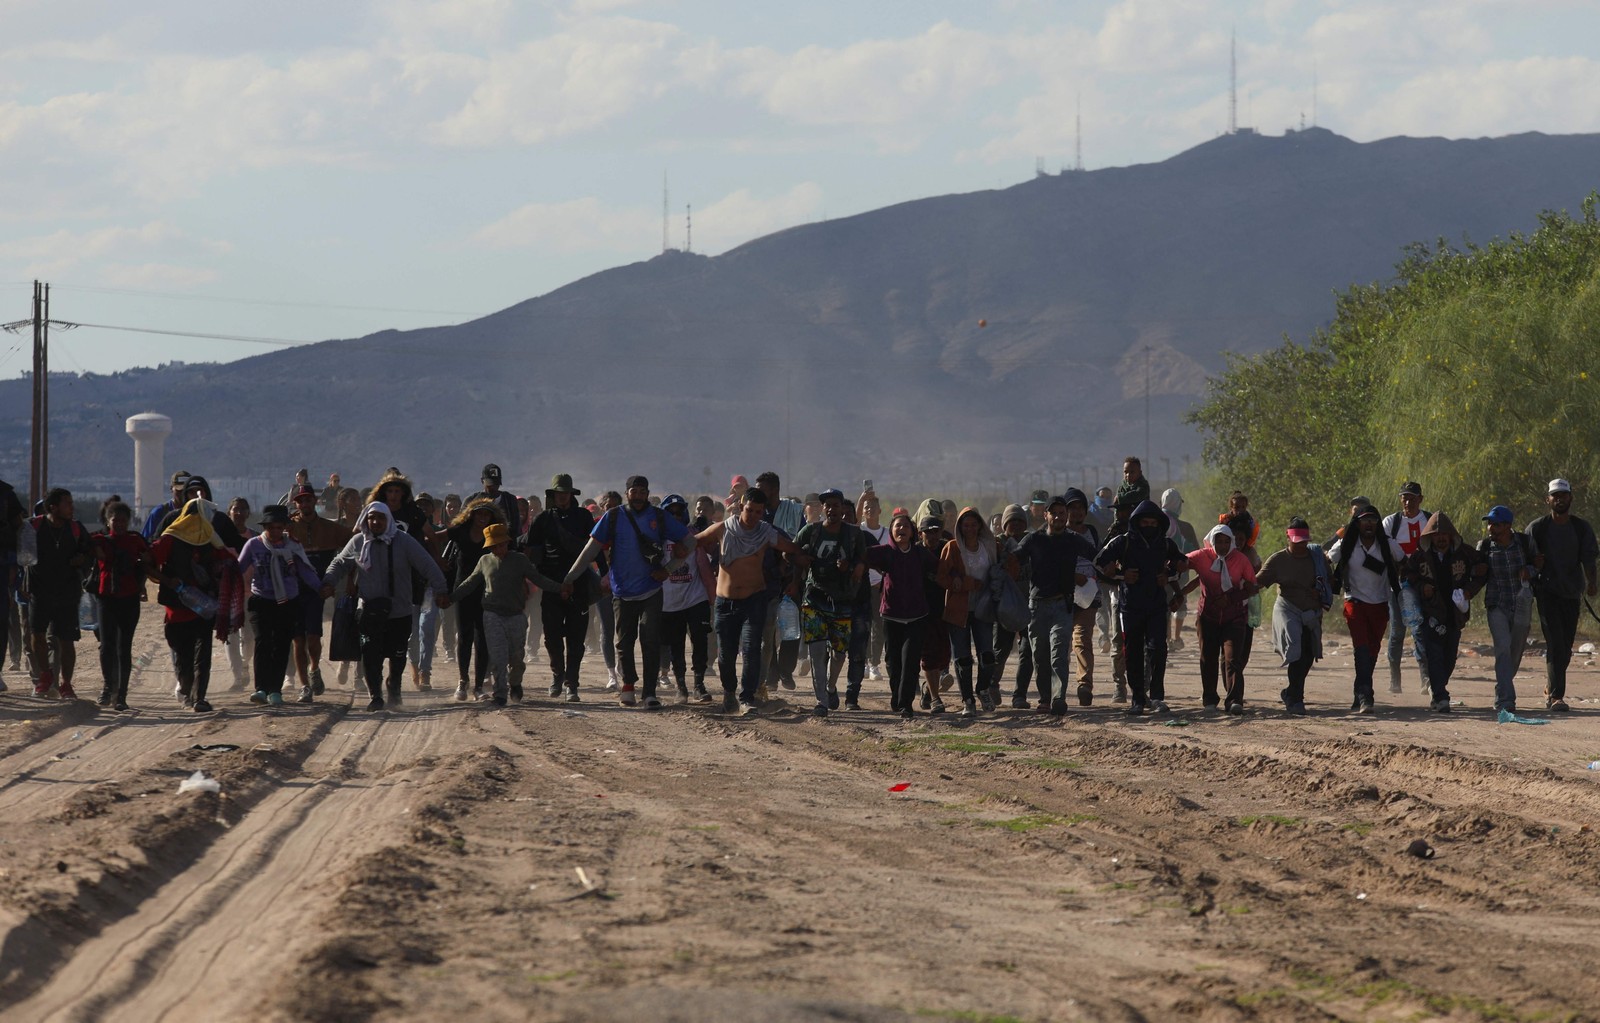 Migrantes dirigem-se ao Rio Grande para atravessá-lo em busca de asilo nos EUA, visto de Ciudad Juarez, estado de Chihuahua, México — Foto: HERIKA MARTINEZ / AFP